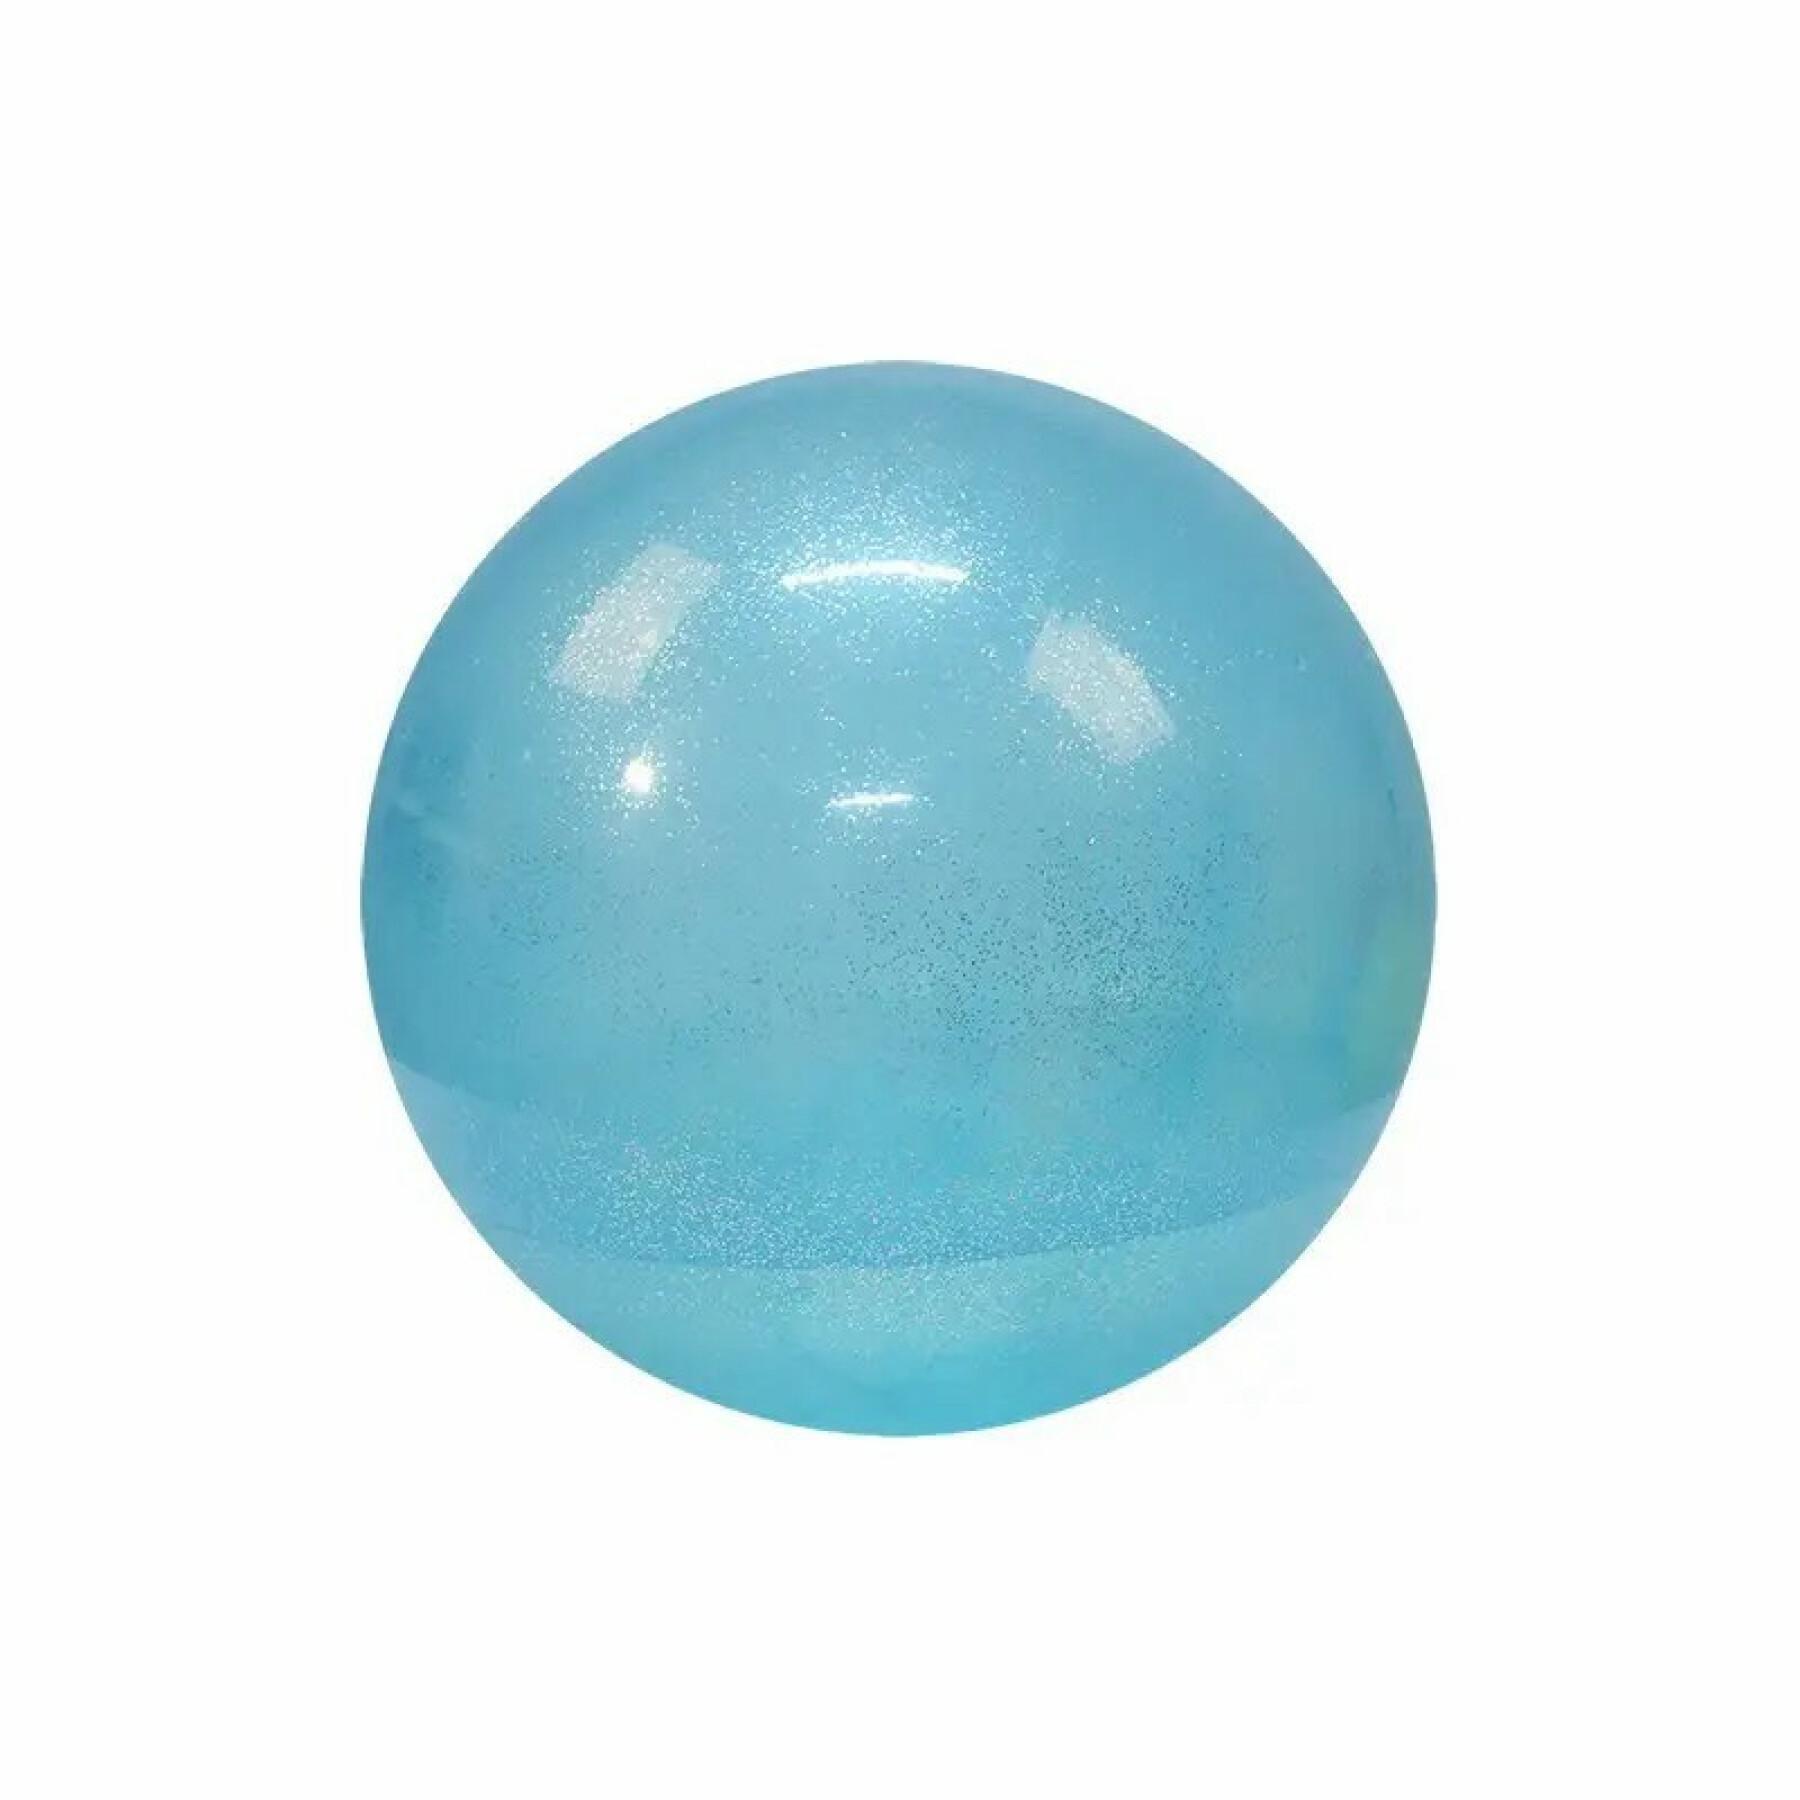 Medecine ball Softee Transparente 3.5 kg